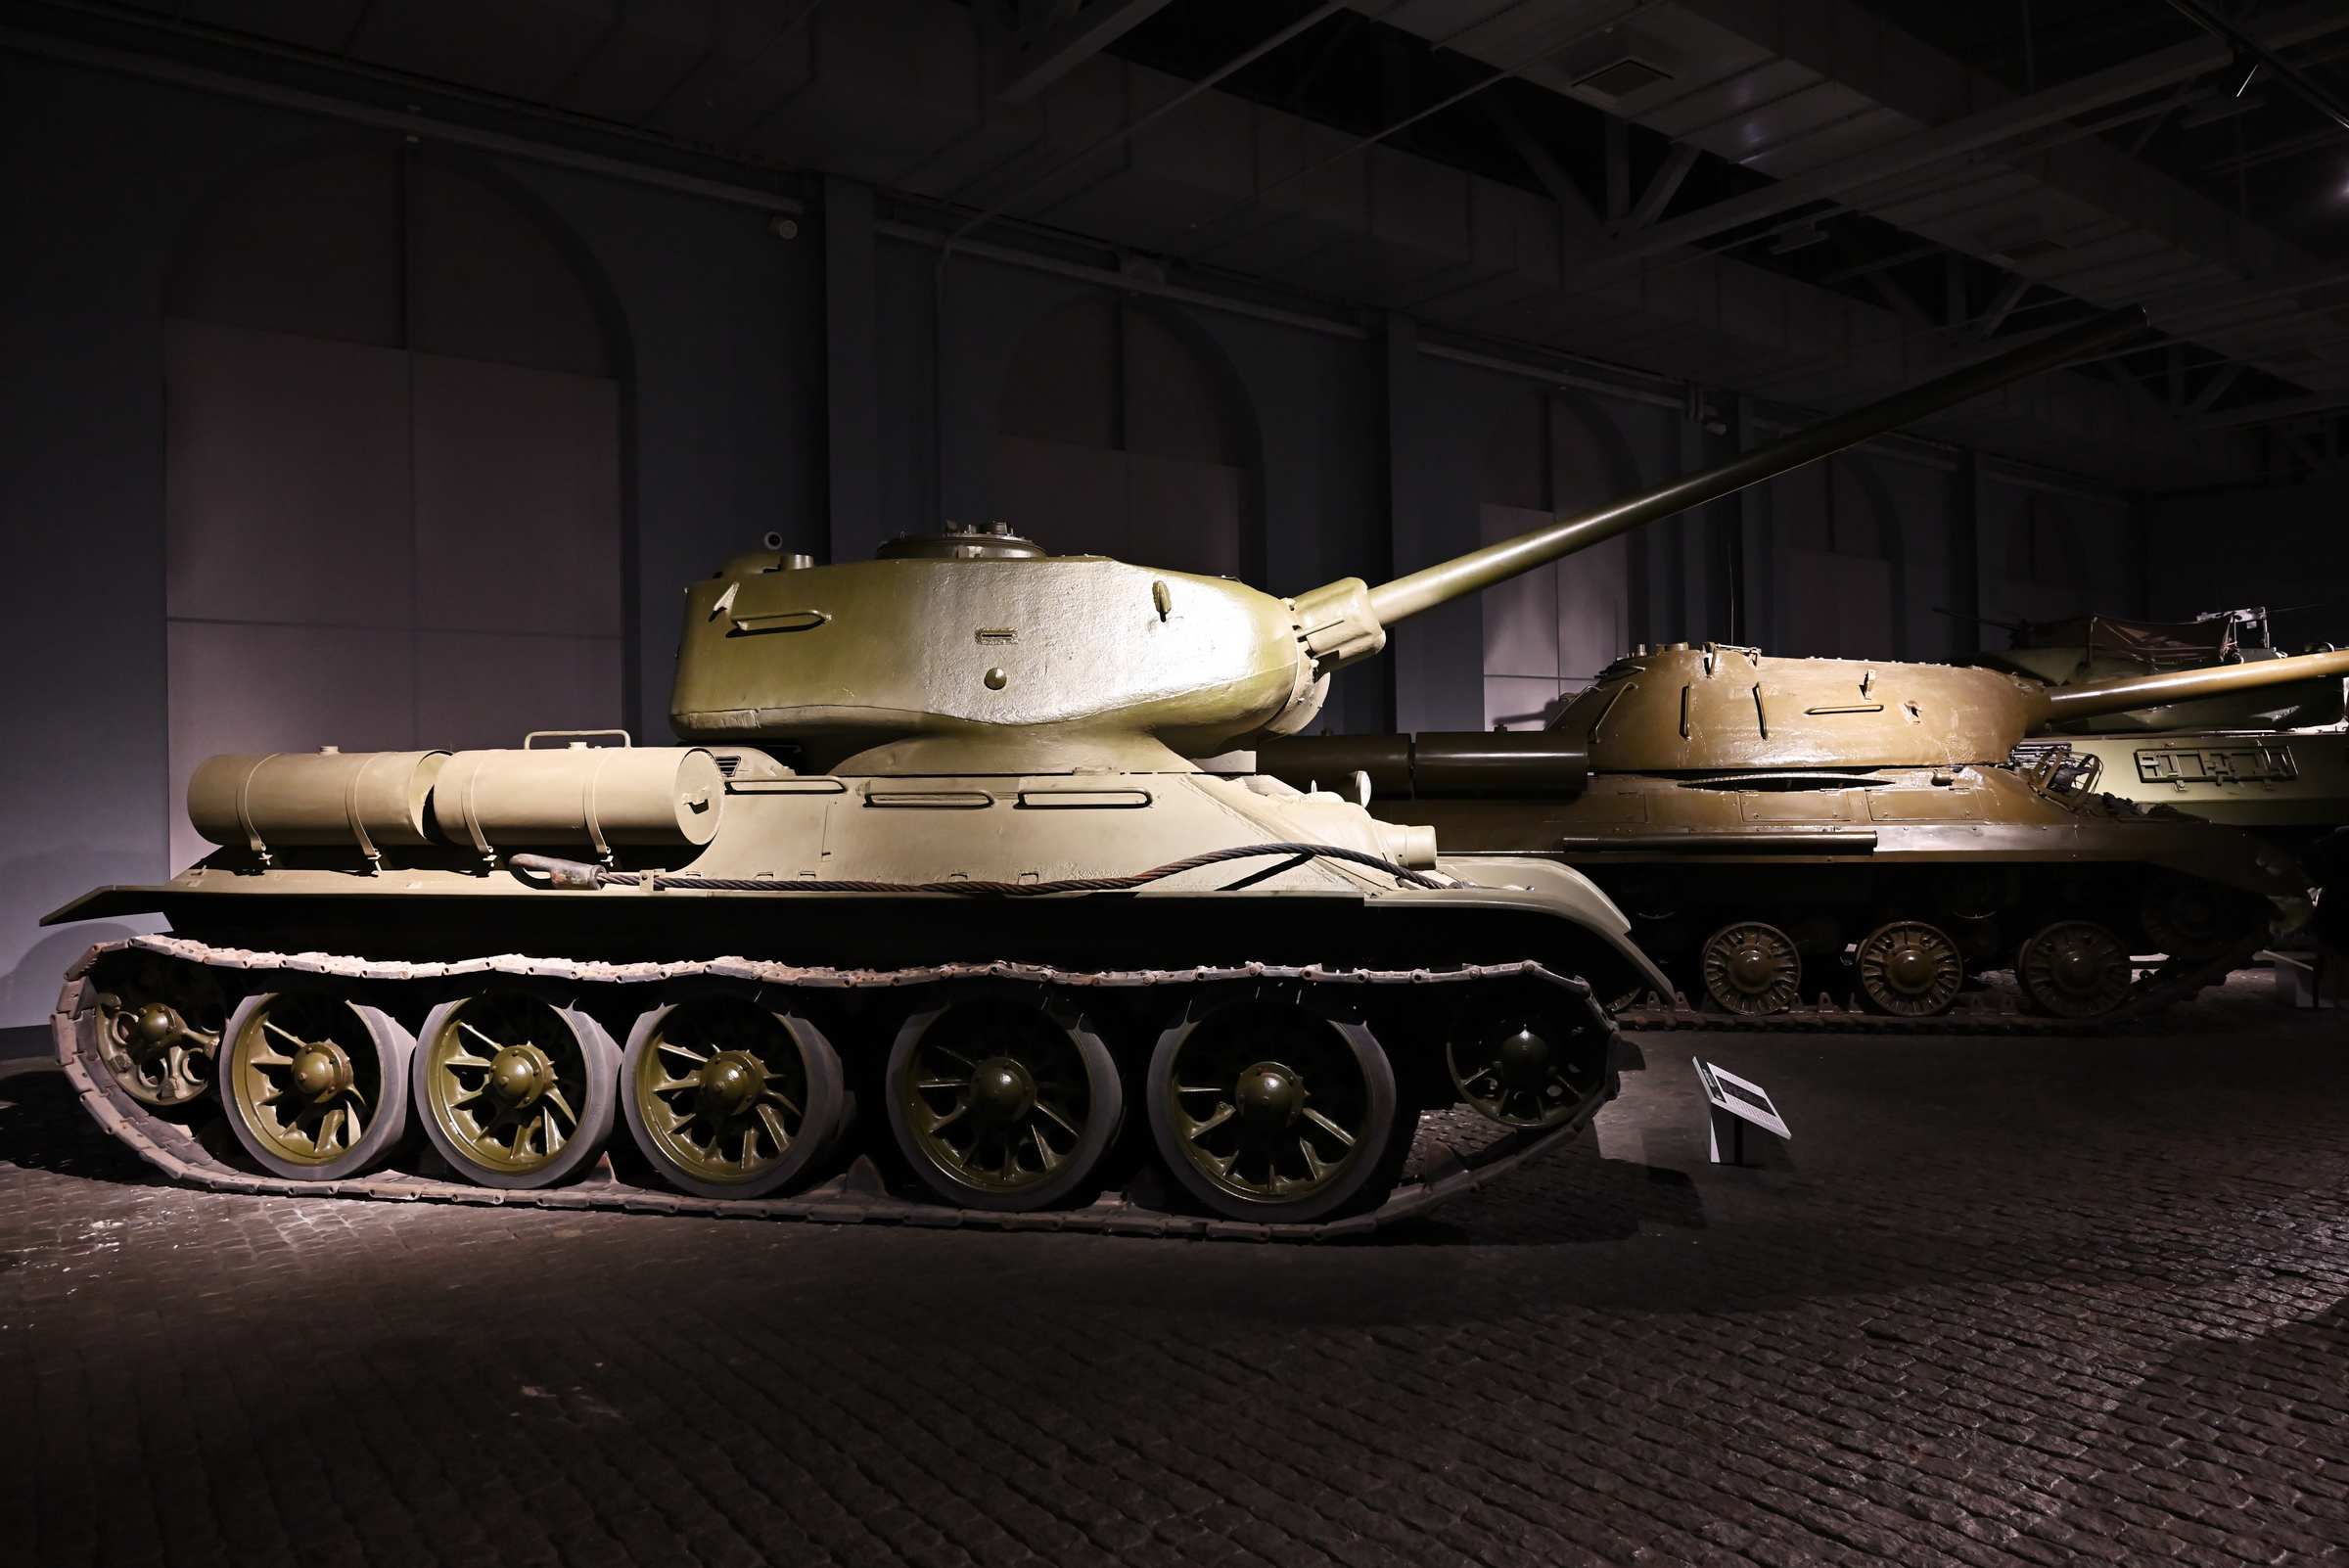 Екатеринбург. Выставочный центр «Парадный расчет» в Верхней Пышме. Средний танк ОТ-34-85 образца 1944 года.